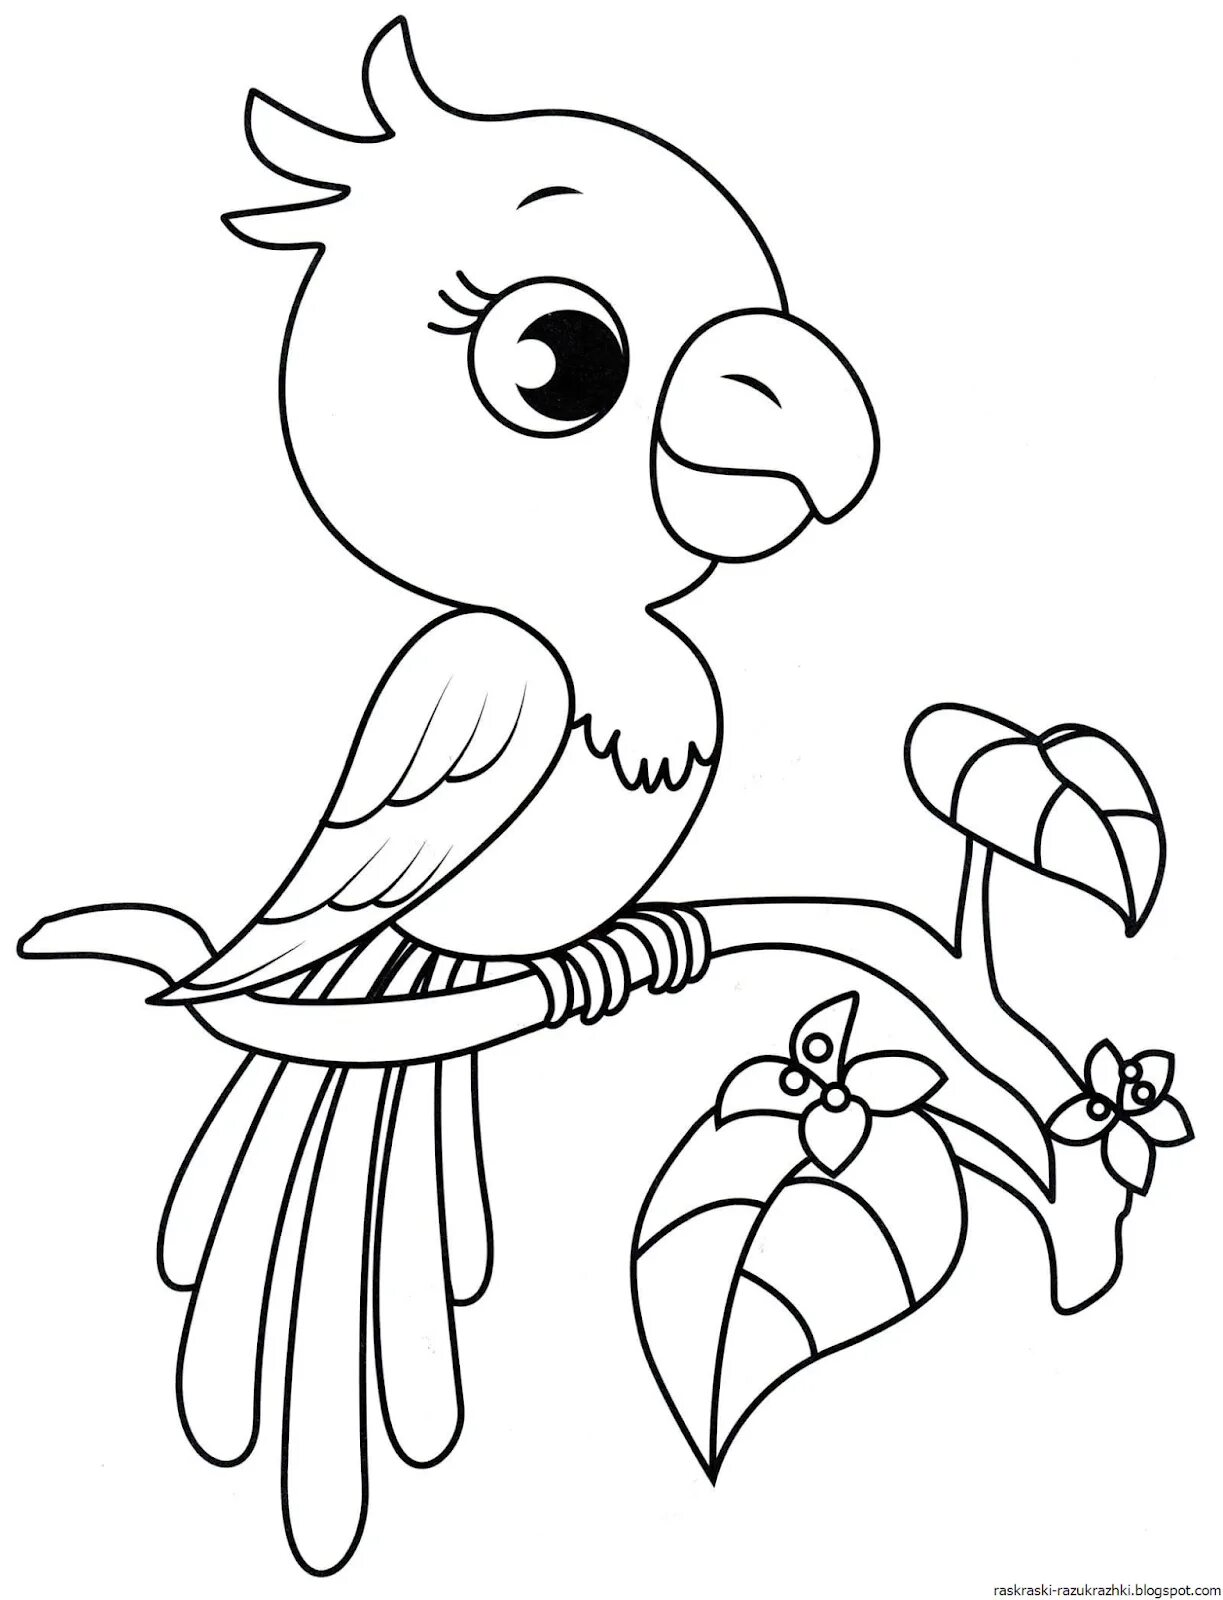 Птица раскраска для детей 2 3 лет. Раскраска попугай. Птичка раскраска. Попугай раскраска для детей. Птичка раскраска для малышей.